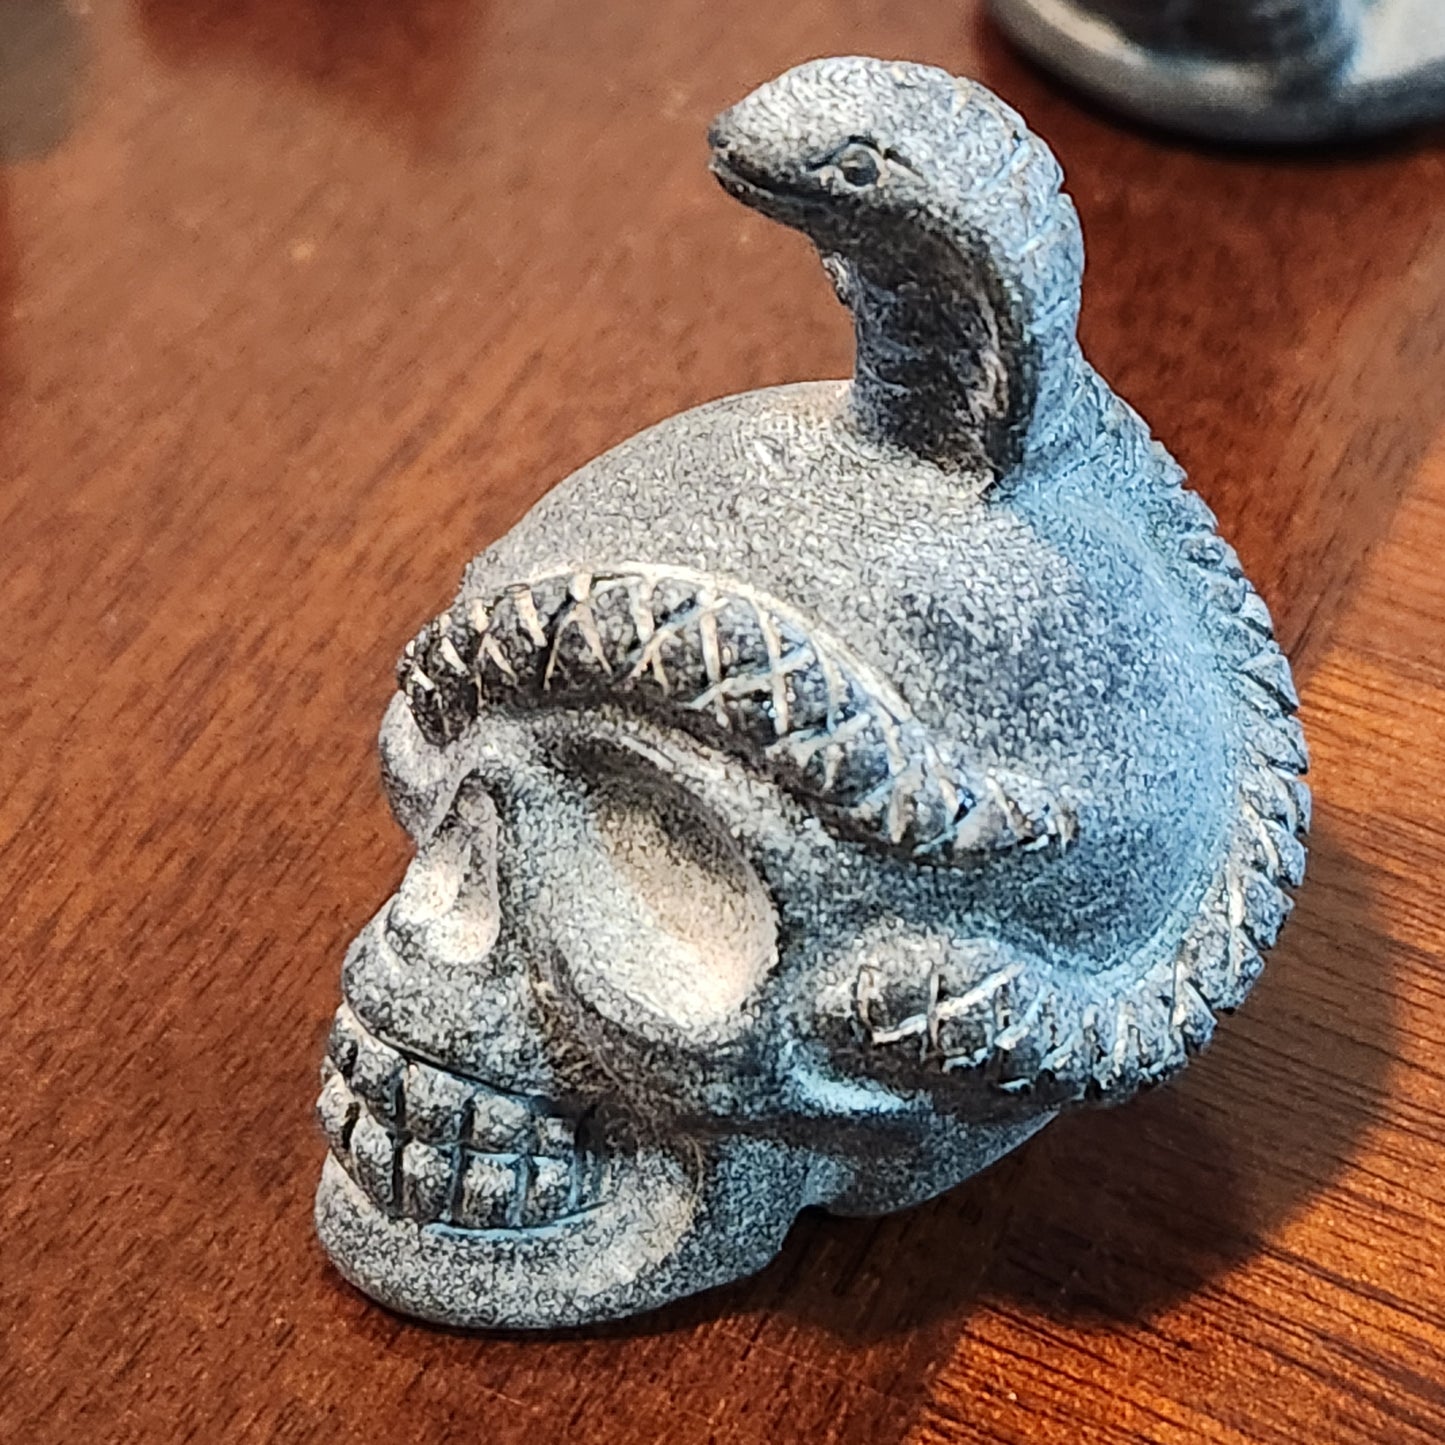 Obsidian Skull with Snake